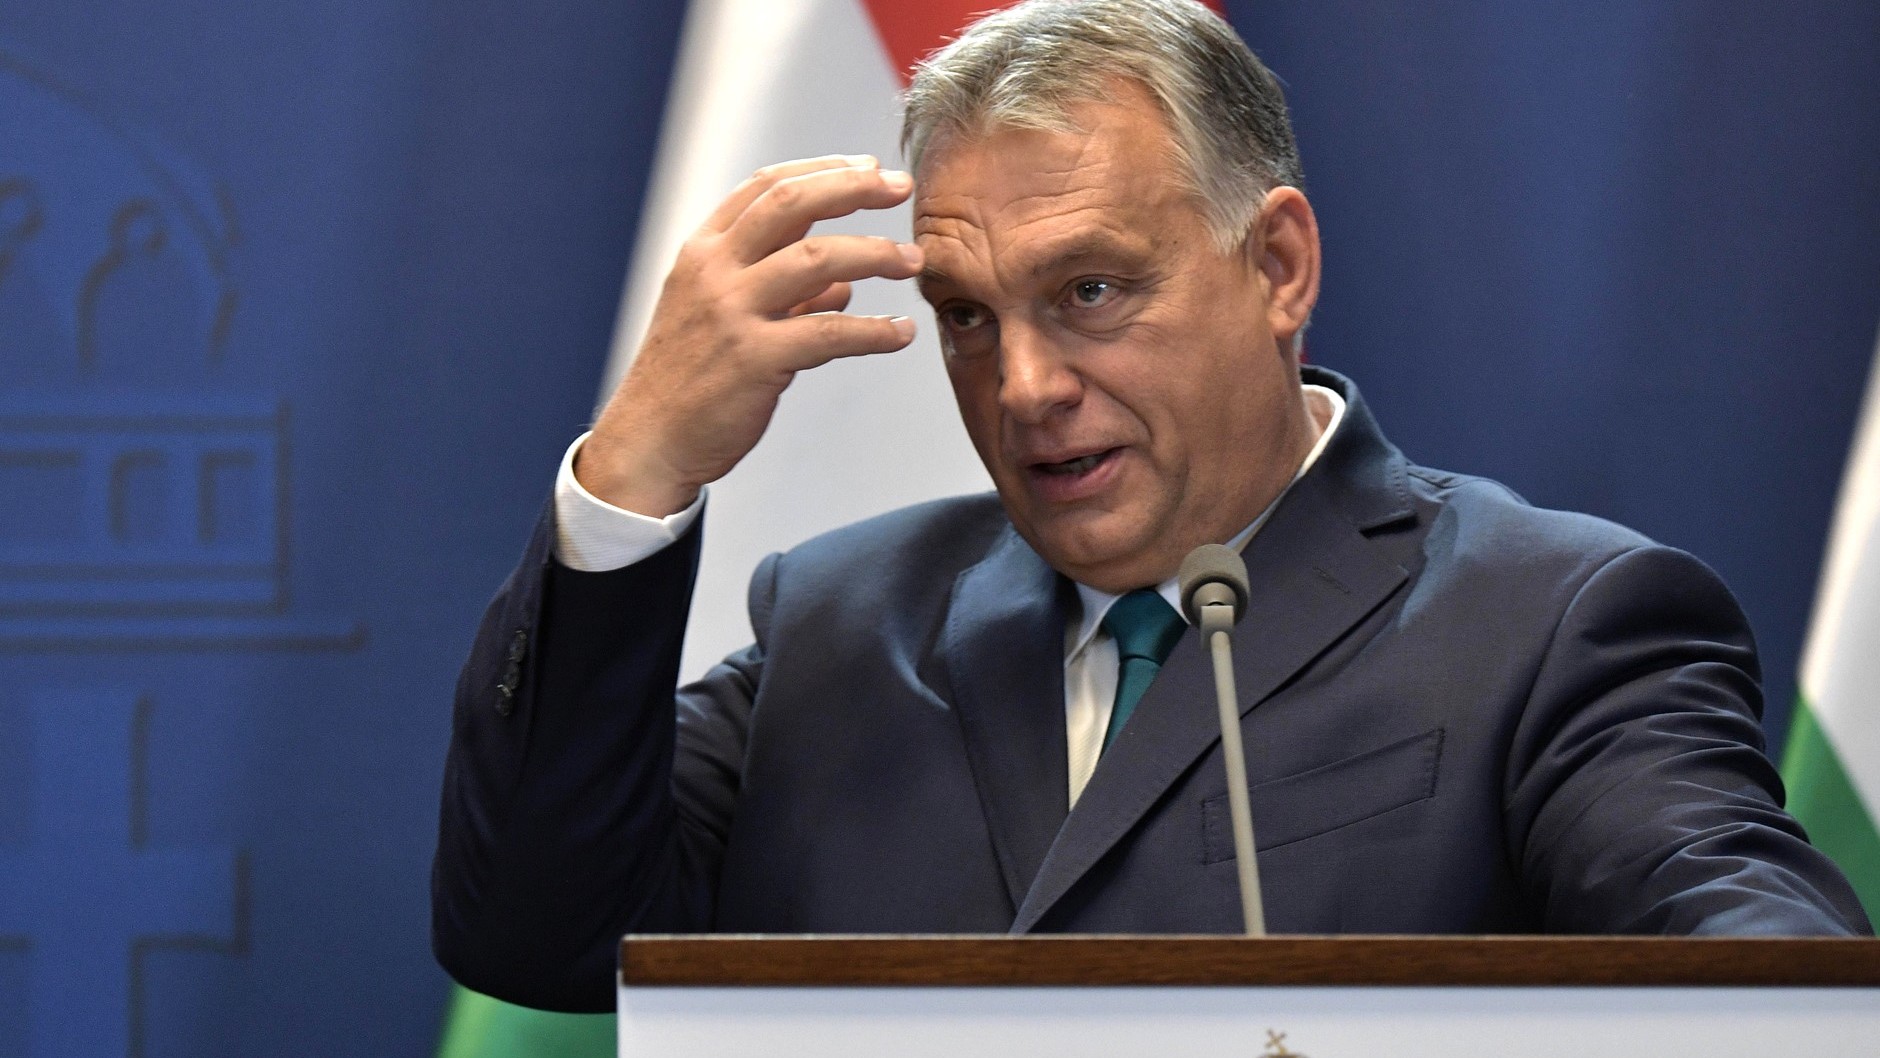 Ota Tiefenböck: Er Viktor Orbán ved at indføre diktatur i Ungarn? Nej, det er han ikke